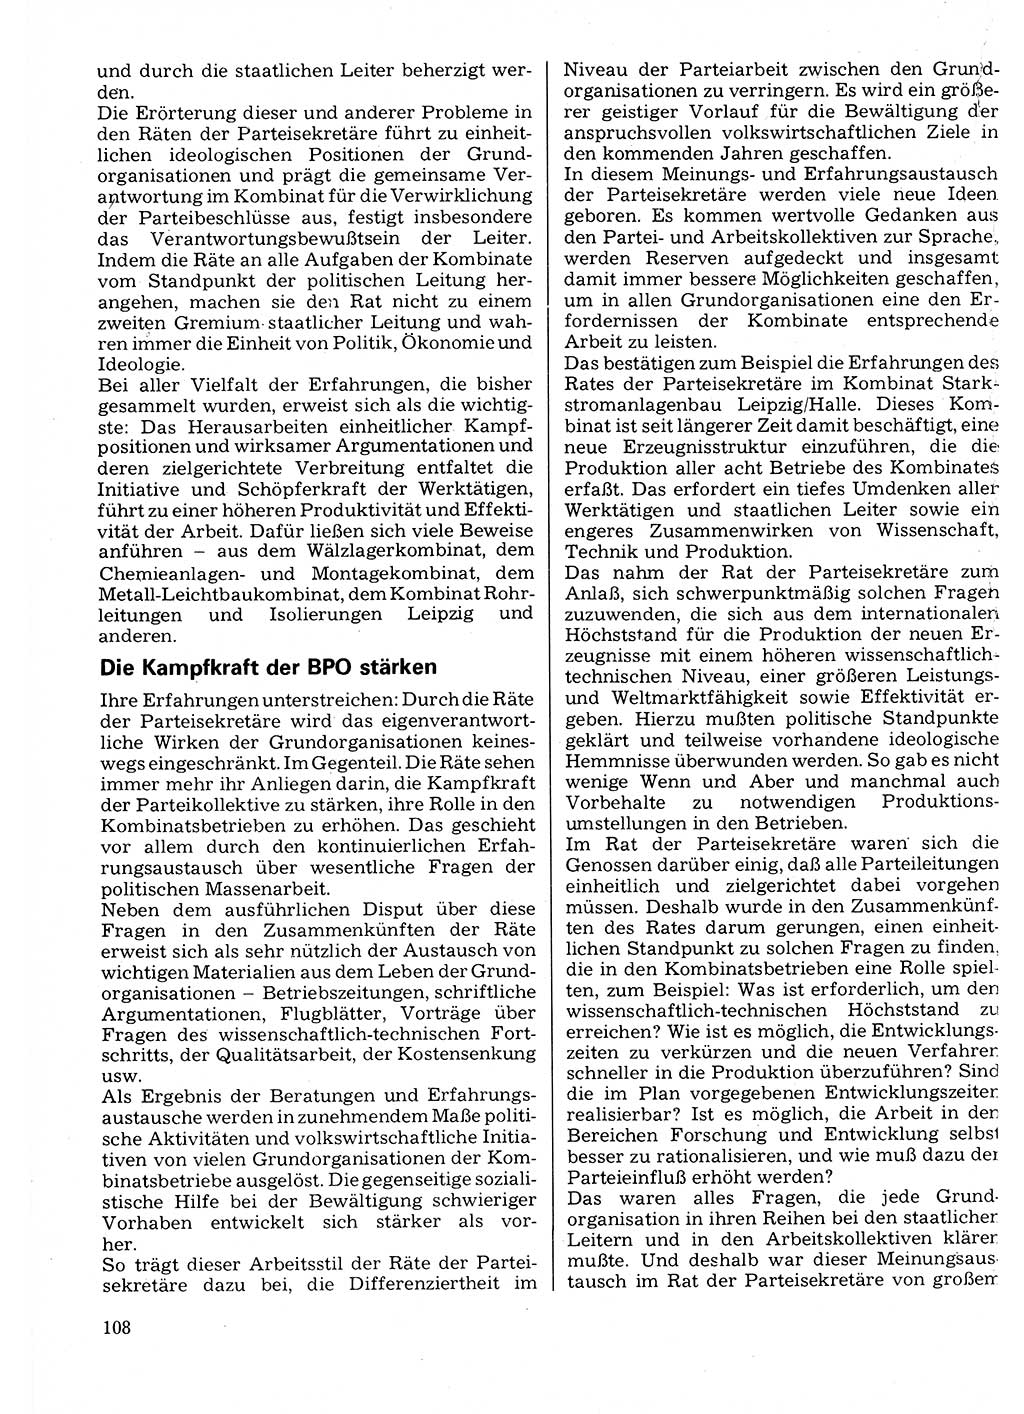 Neuer Weg (NW), Organ des Zentralkomitees (ZK) der SED (Sozialistische Einheitspartei Deutschlands) für Fragen des Parteilebens, 32. Jahrgang [Deutsche Demokratische Republik (DDR)] 1977, Seite 108 (NW ZK SED DDR 1977, S. 108)